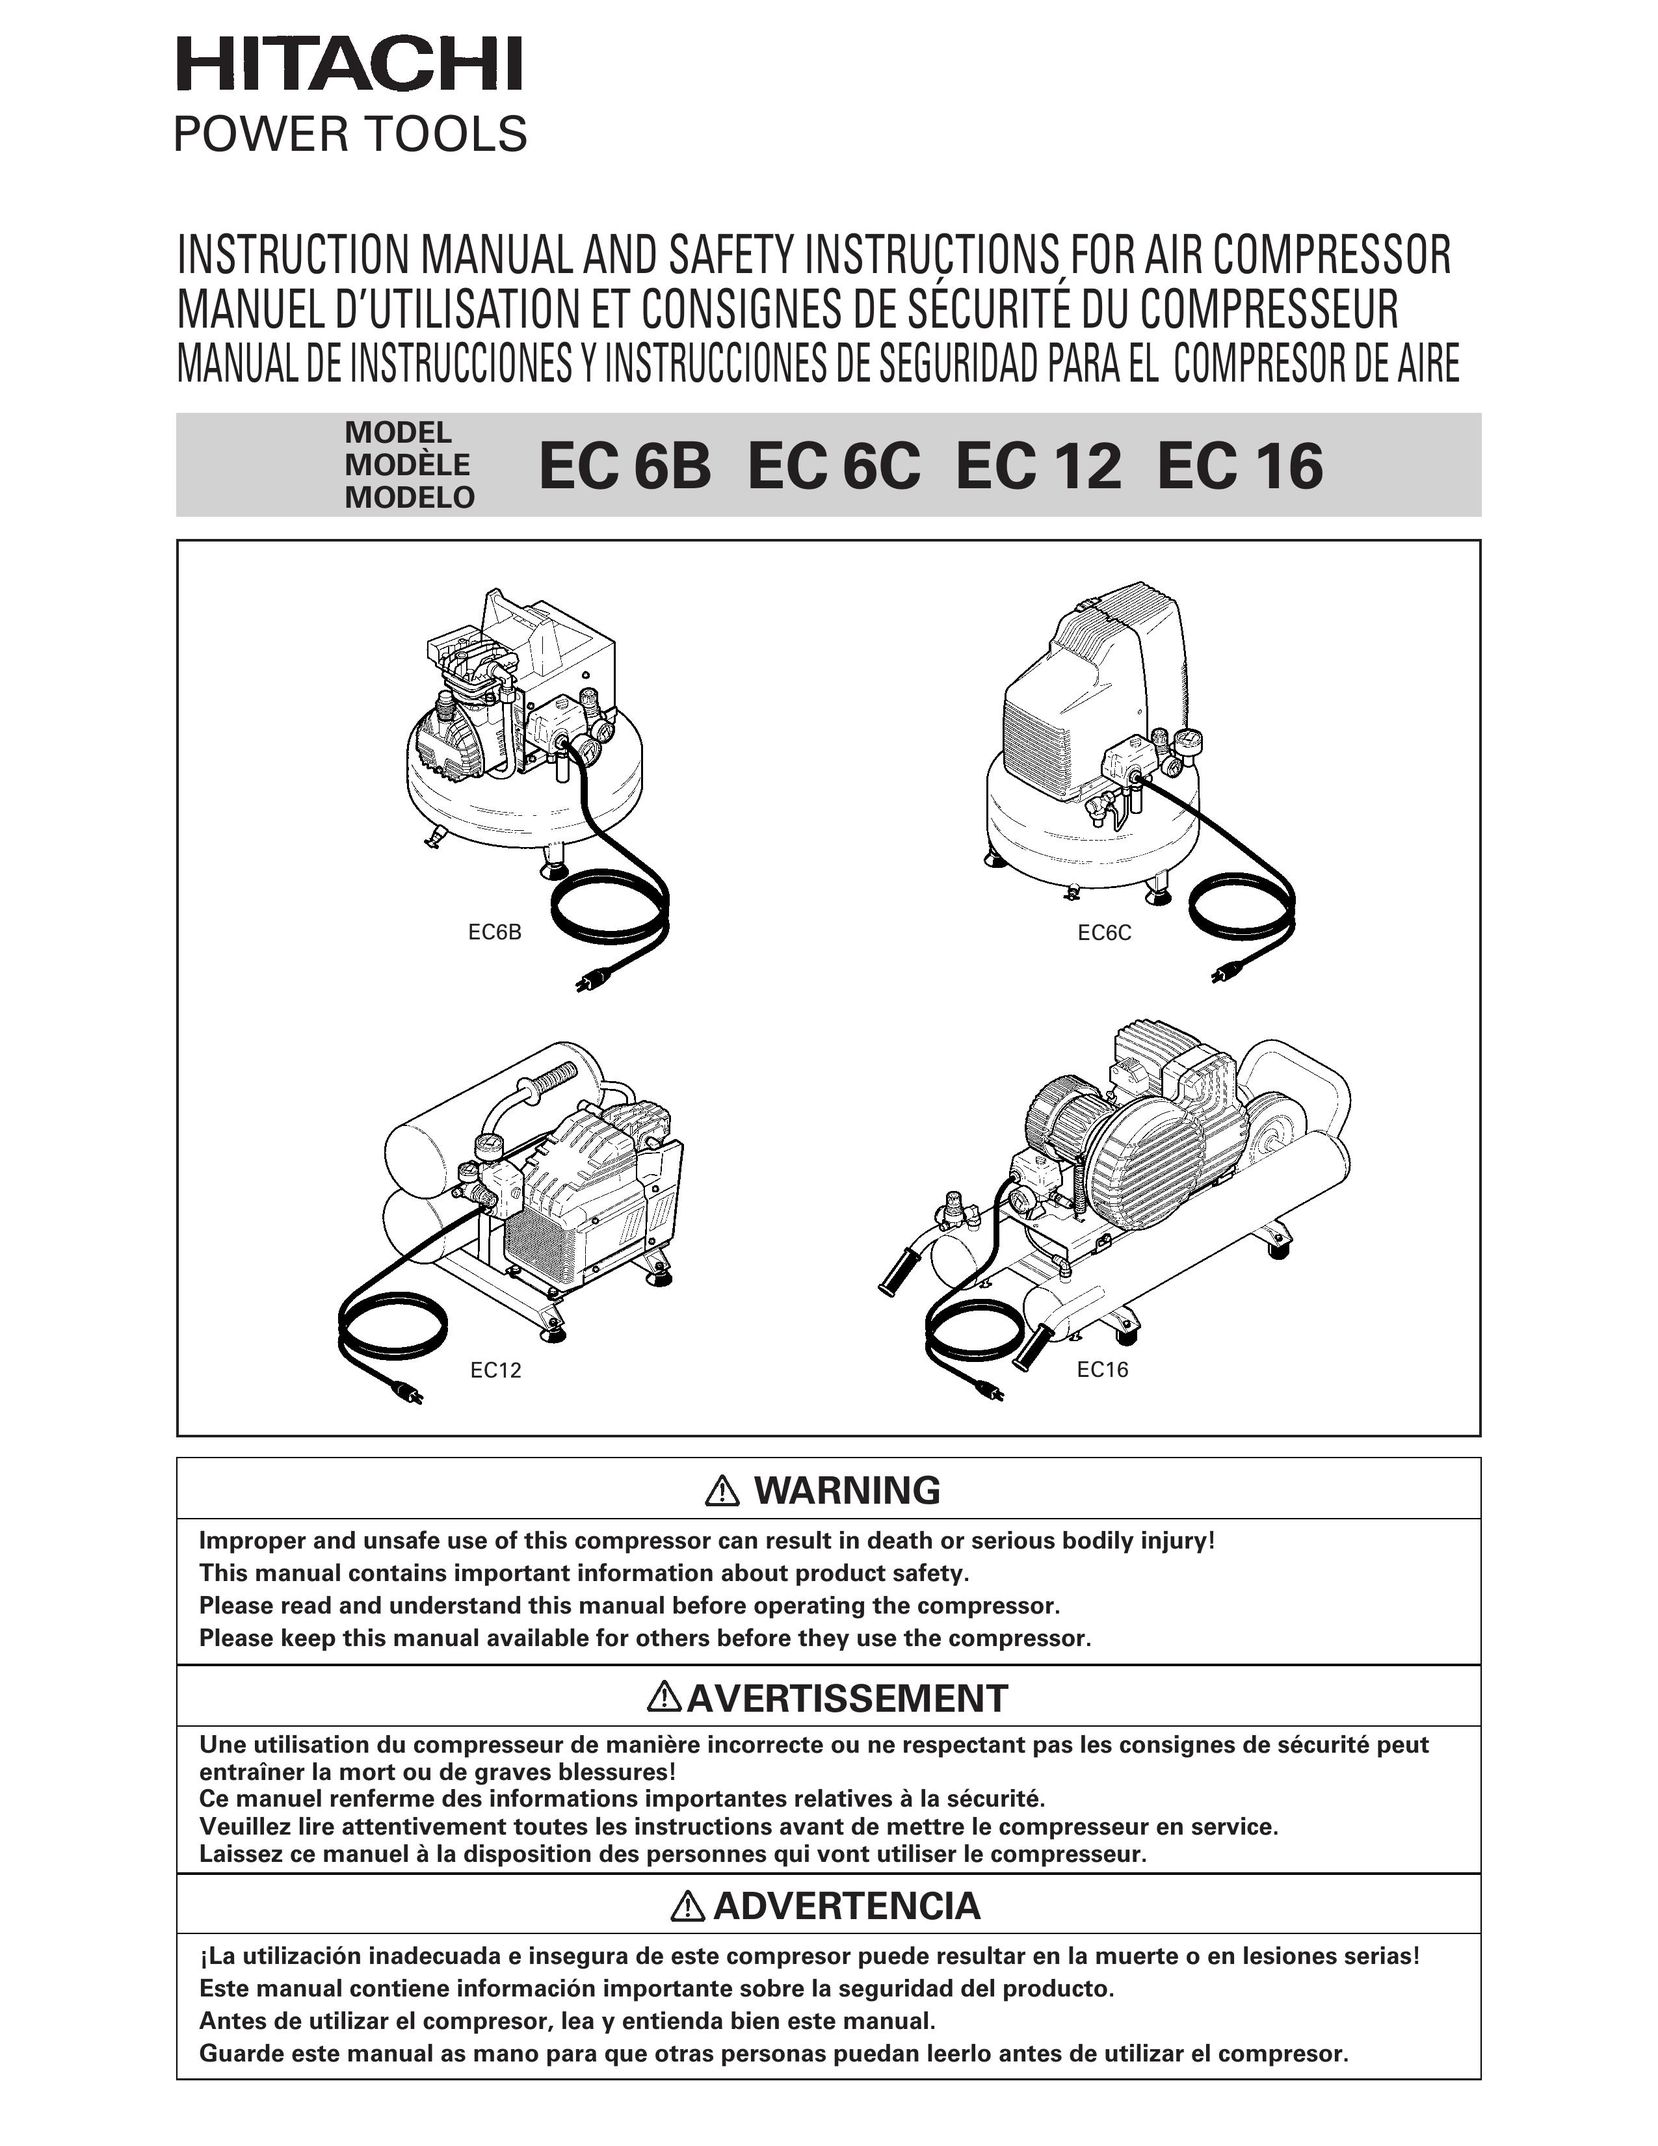 Hitachi EC 16 Air Compressor User Manual